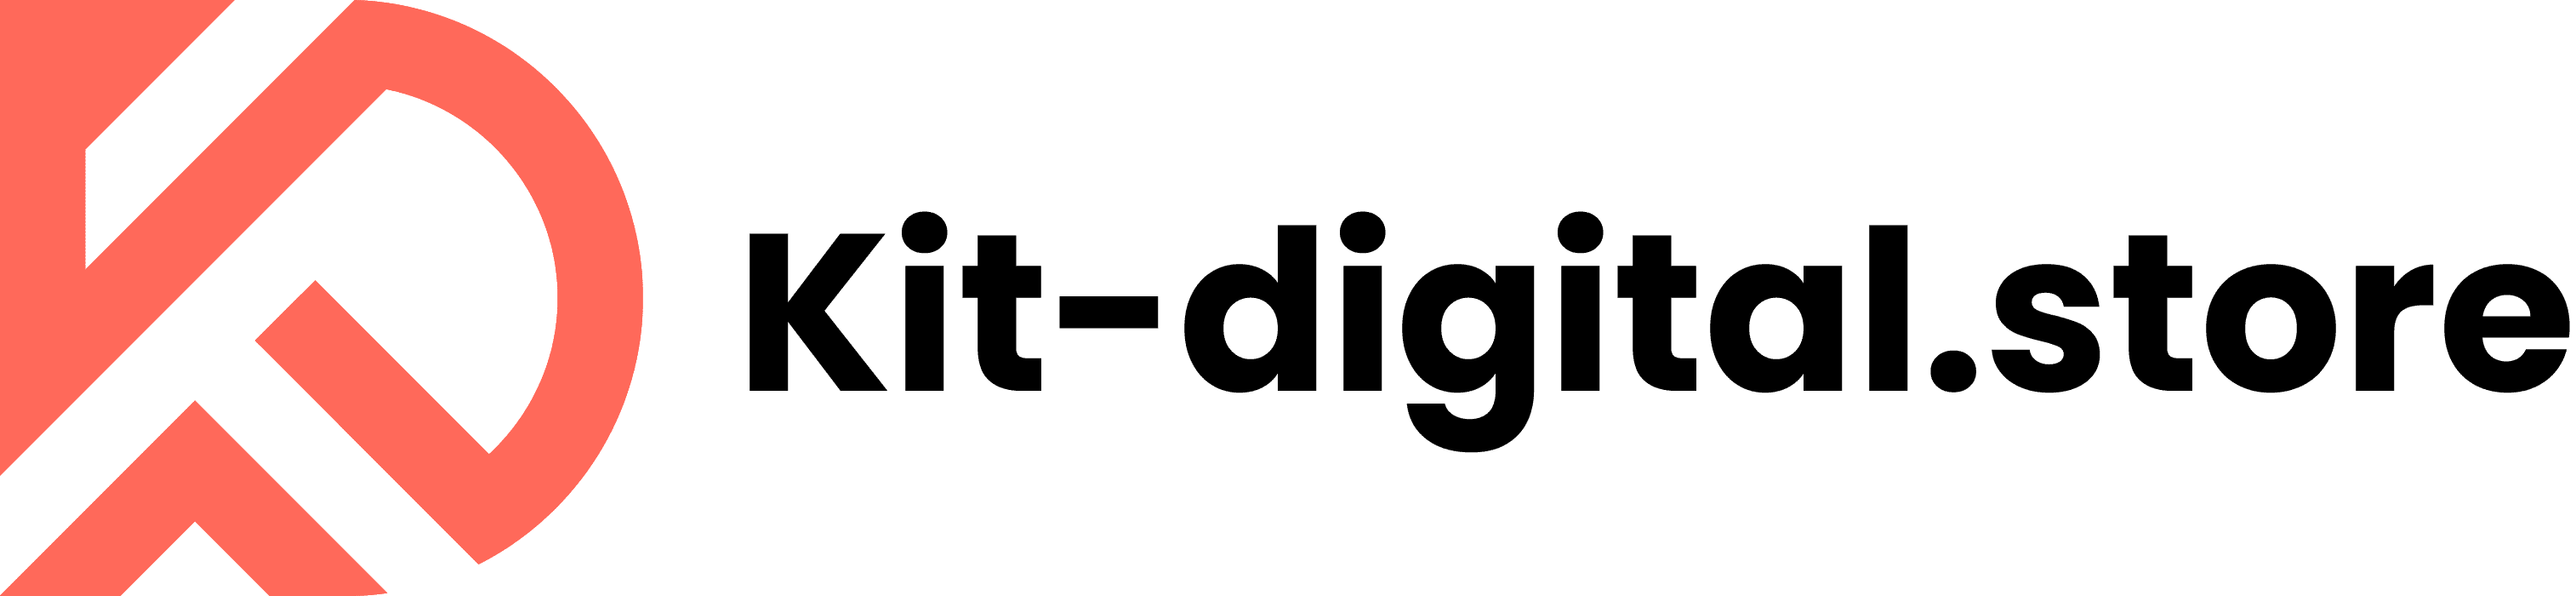 Subvención kit digital, agentes digitalizadores